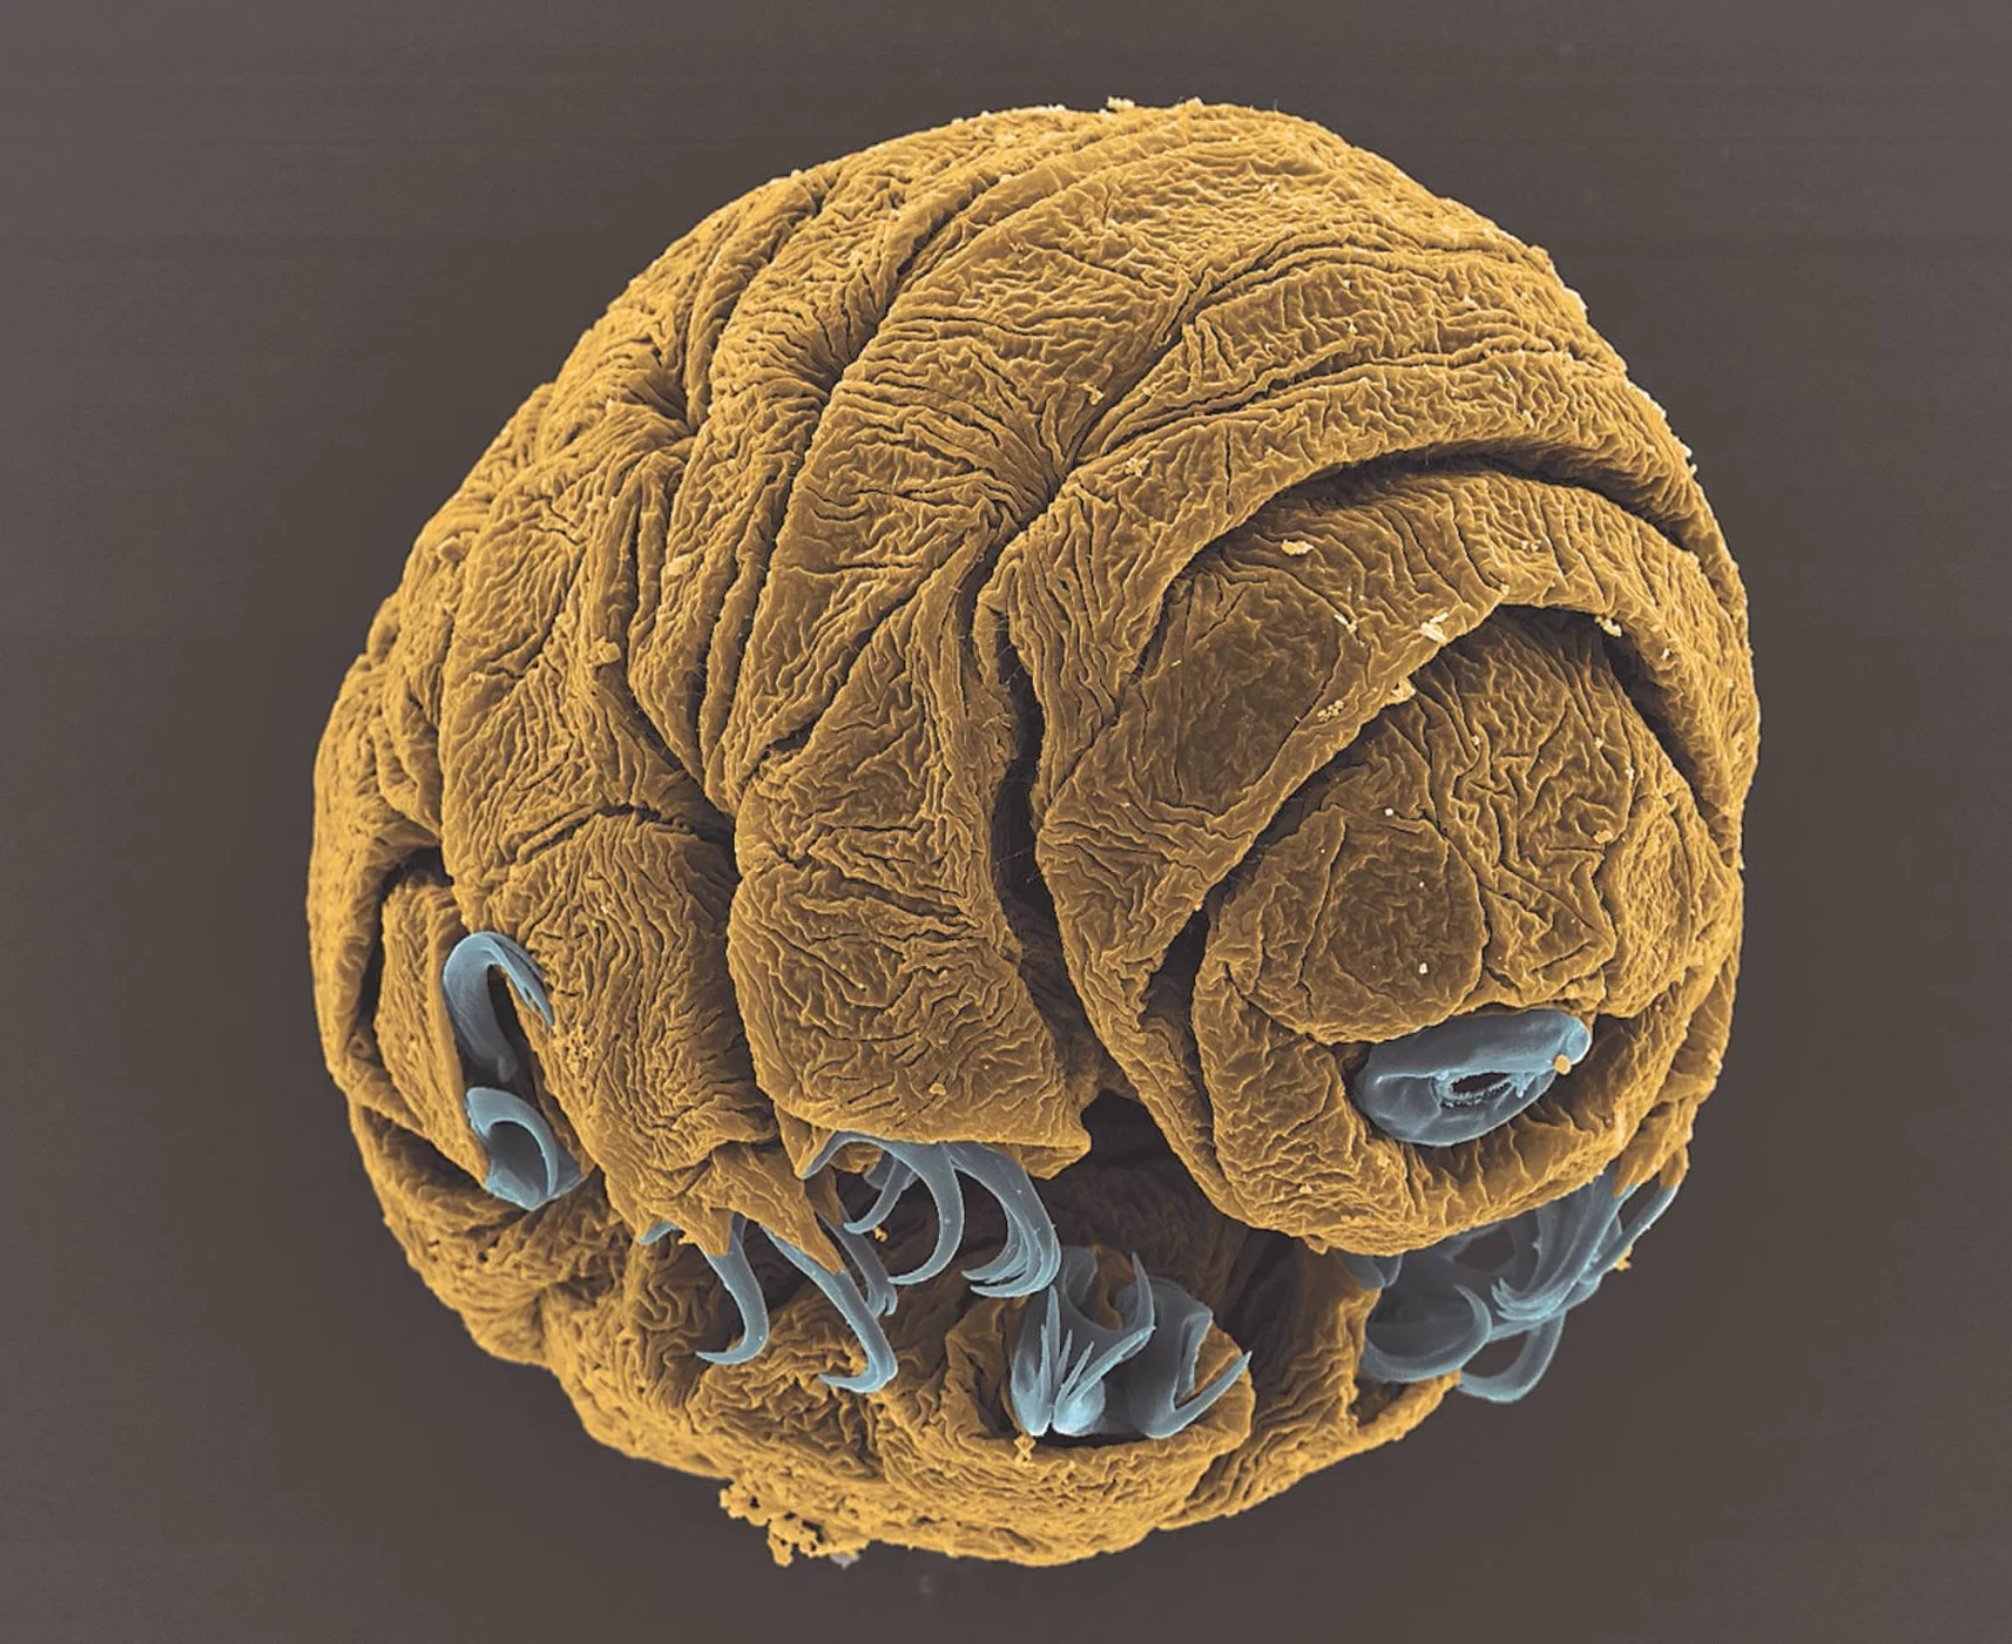 Vladimir Gross utilizó un microscopio electrónico de barrido para capturar esta imagen de un pequeño embrión tardígrado de 50 horas de antigüedad. Crédito: Vladimir Gross